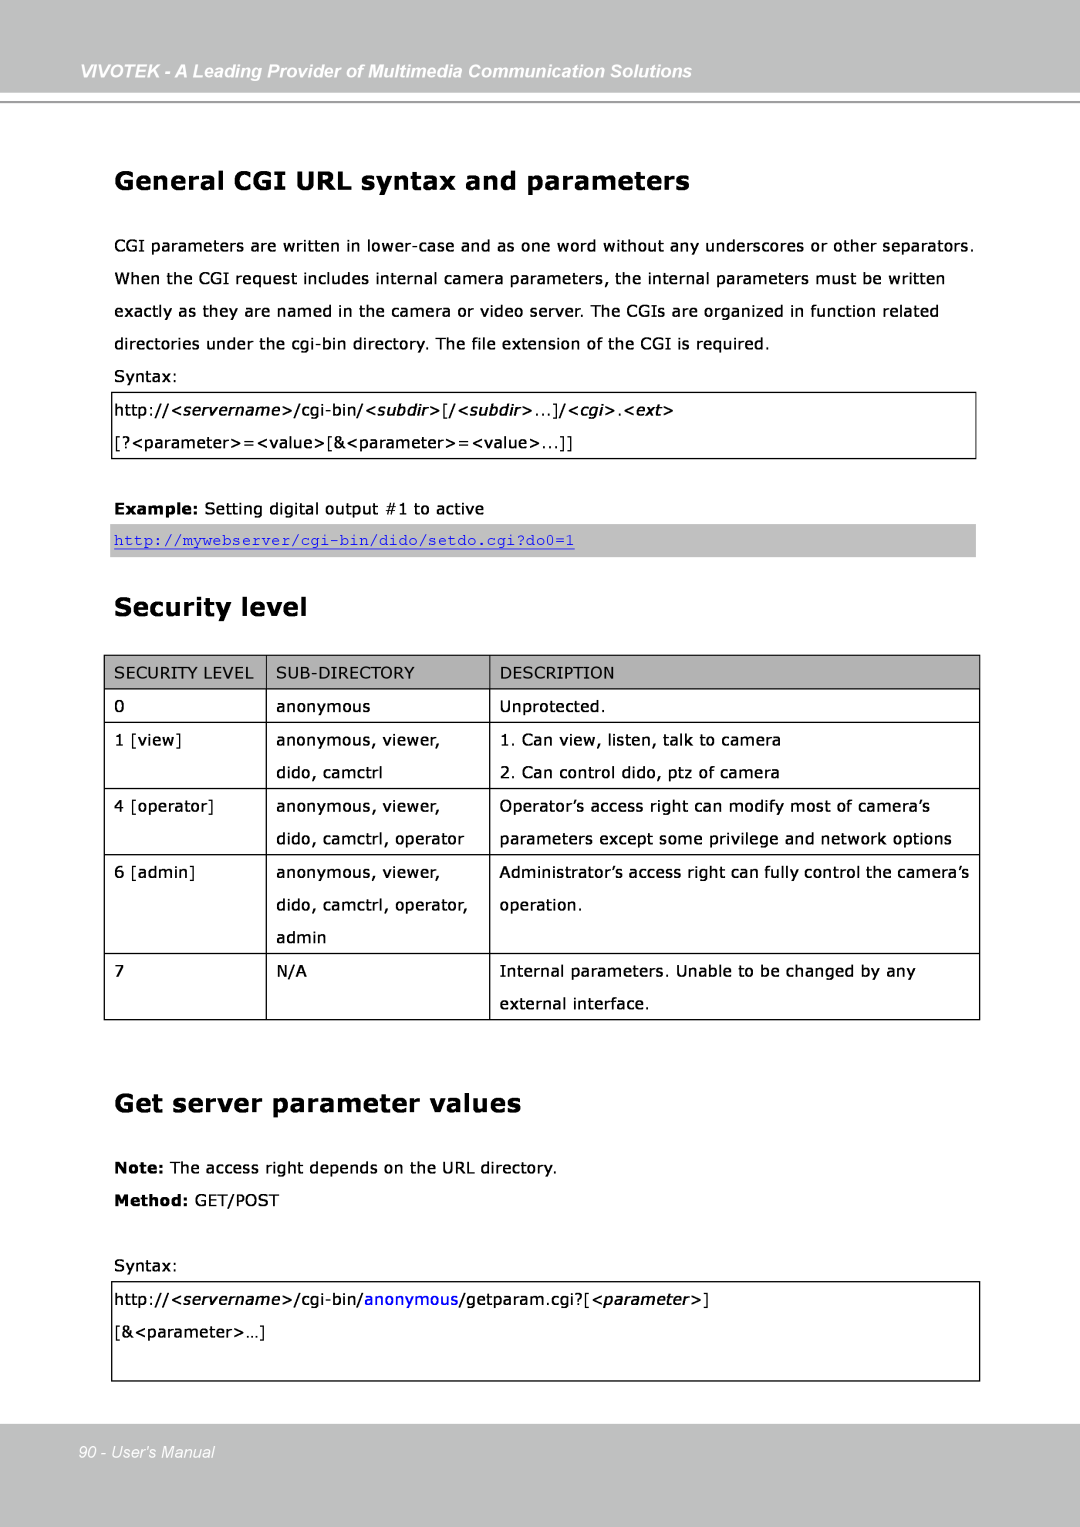 Vivotek FD7141(V) General CGI URL syntax and parameters, Security level, Get server parameter values, Method: GET/POST 